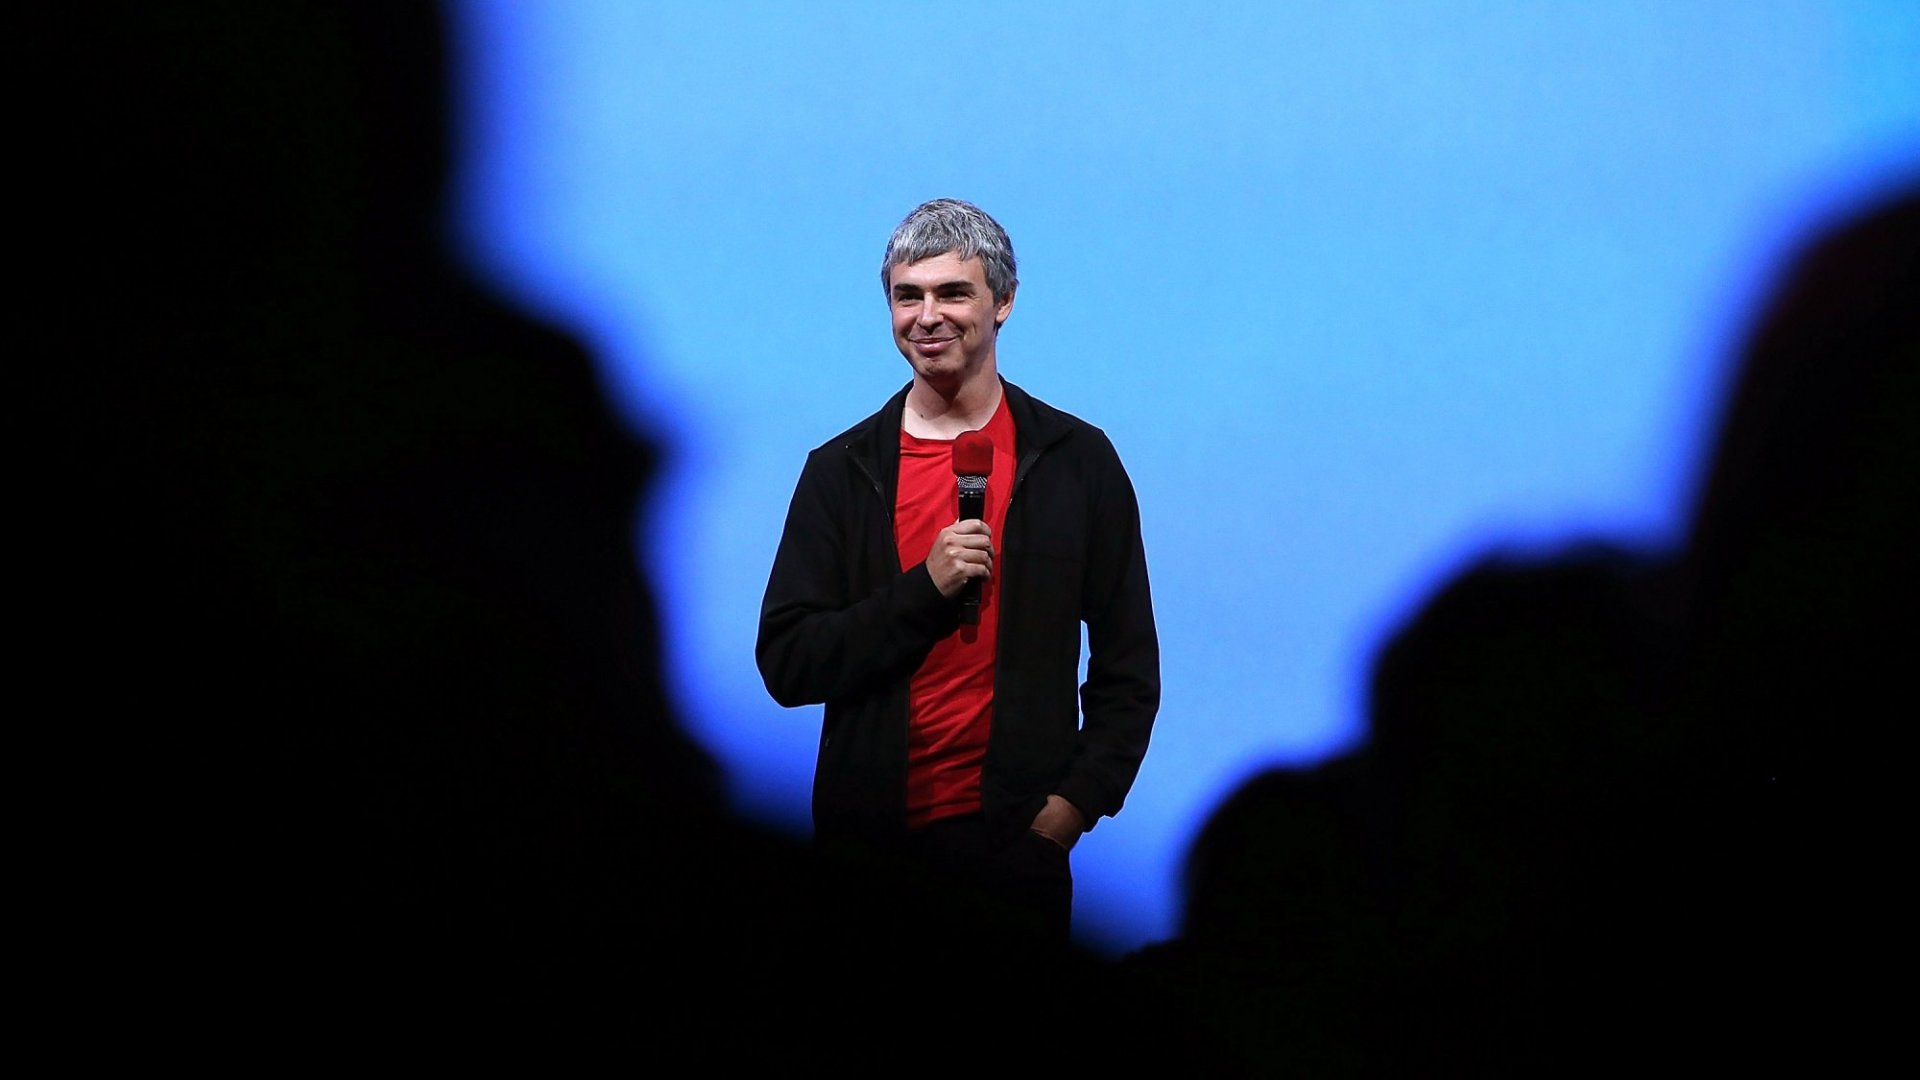 En 5ème position, Larry Page, cofondateur de Google, voit sa fortune bondir de 34,4 milliards et culminer à 111,7 milliards de dollars.